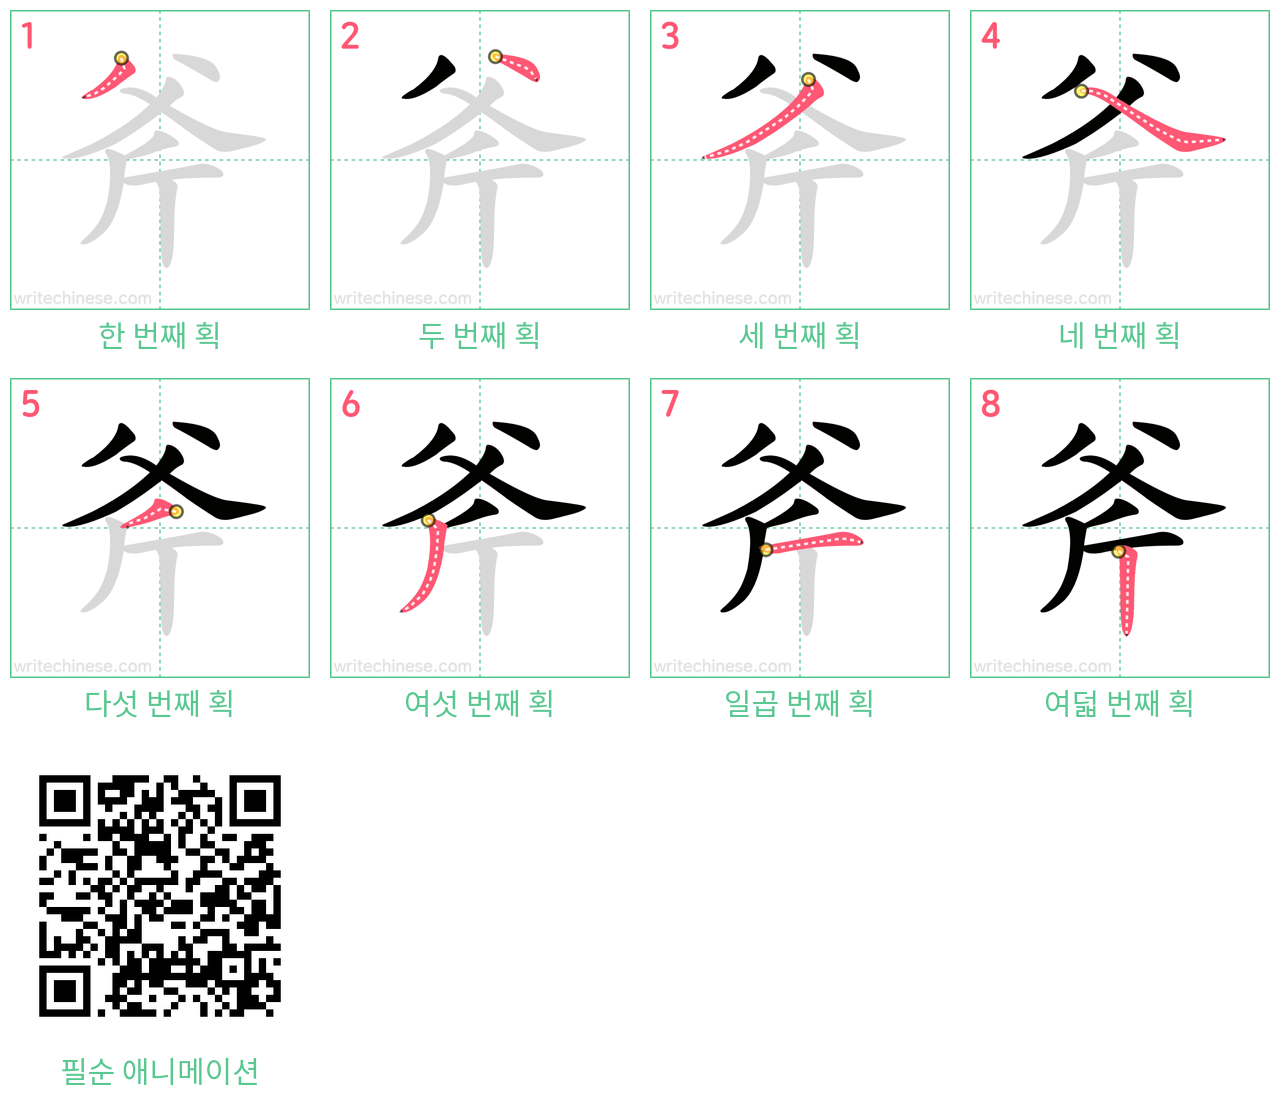 斧 step-by-step stroke order diagrams